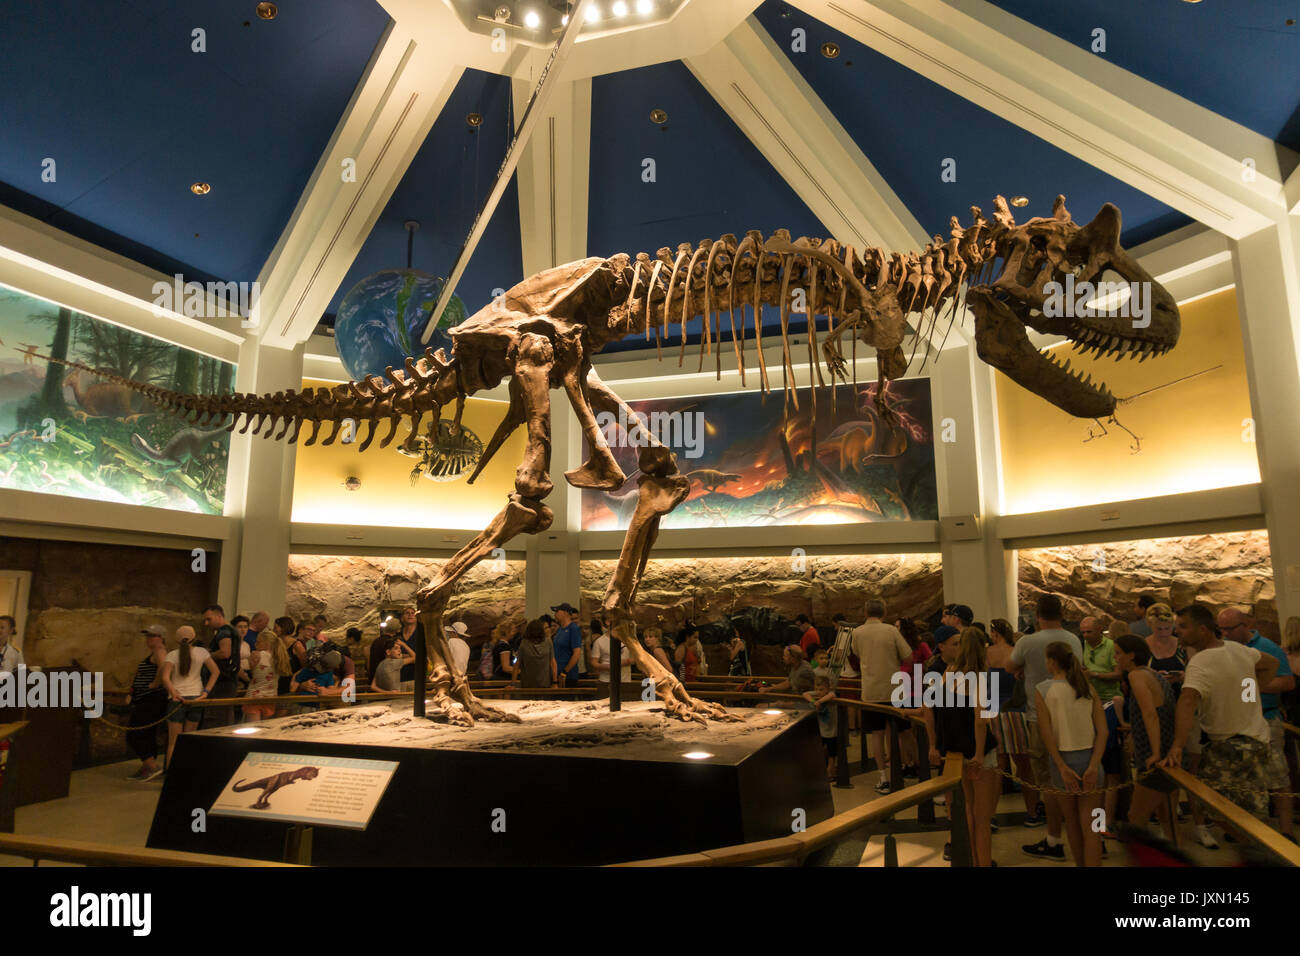 L'intérieur de la zone d'attente du dinosaure monter dans Animal Kingdom, parc à thème walt disney World, Orlando, Floride. Banque D'Images